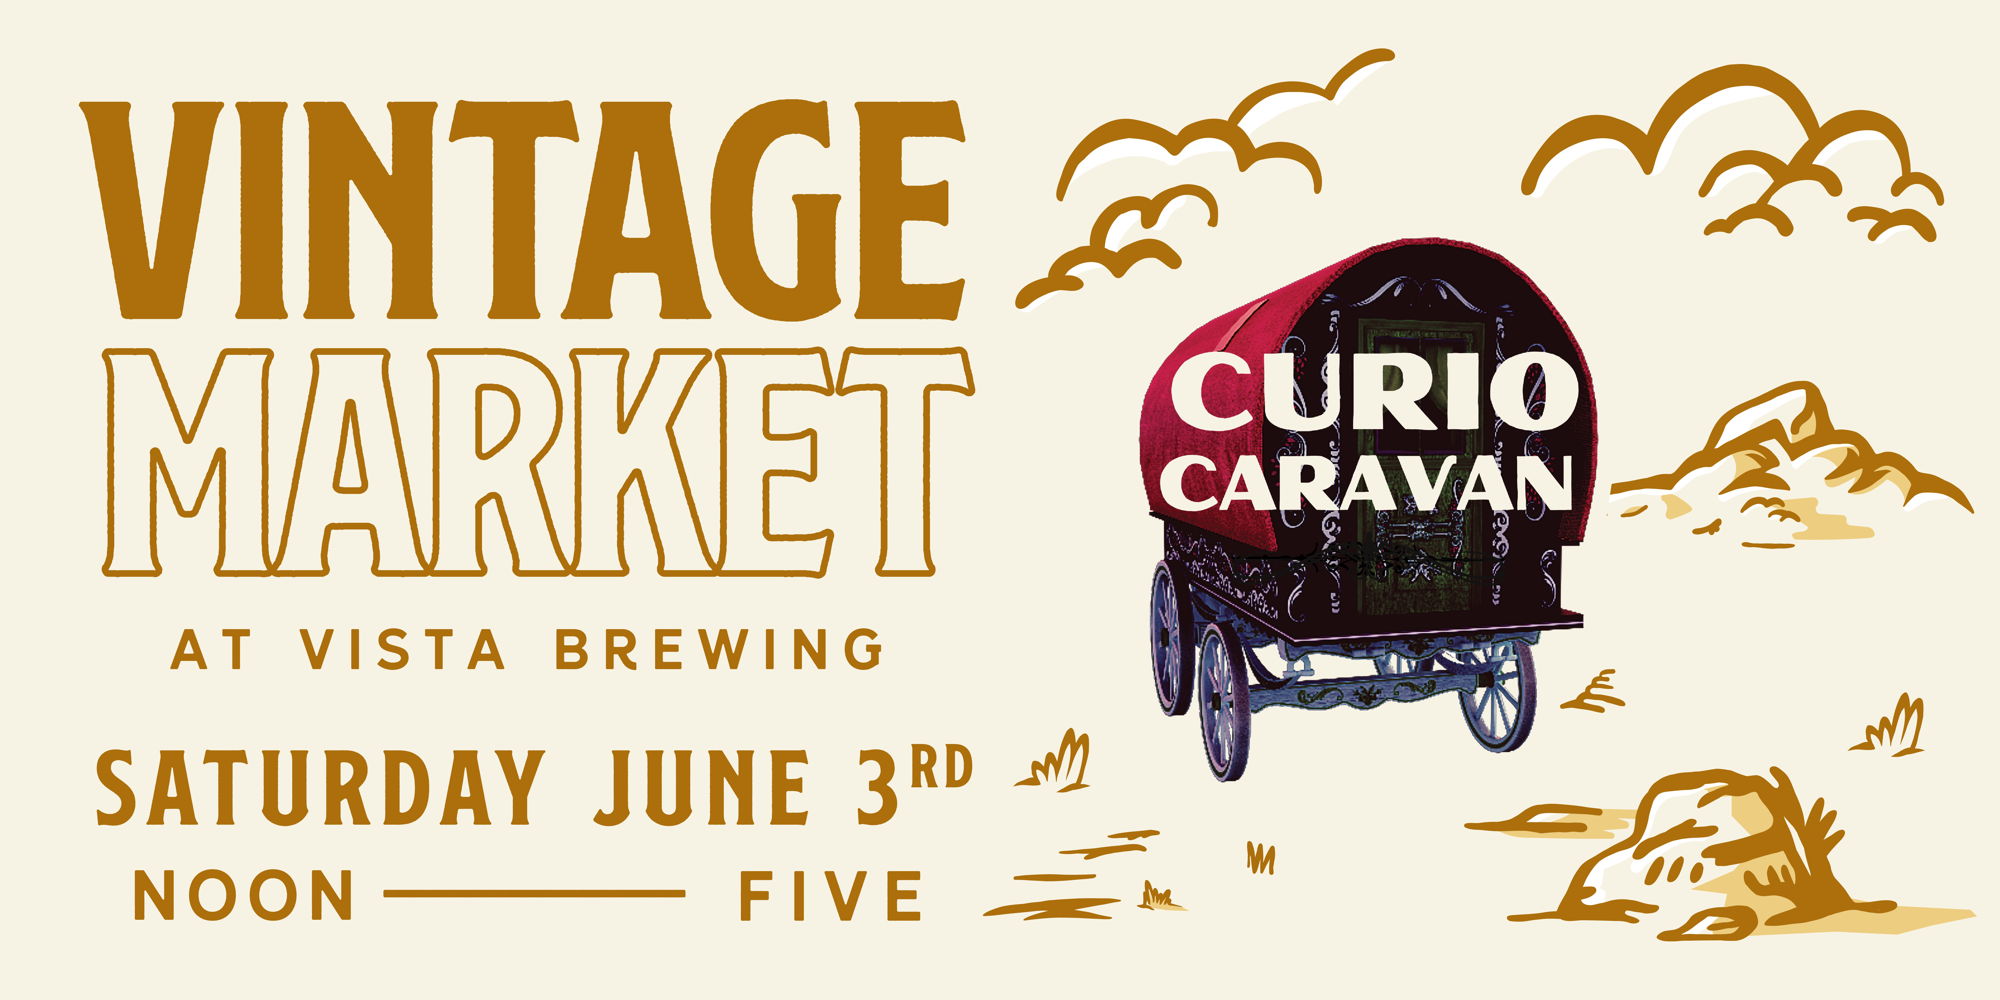 Vintage Market at Vista Brewing - Presented by Curio Caravan  promotional image